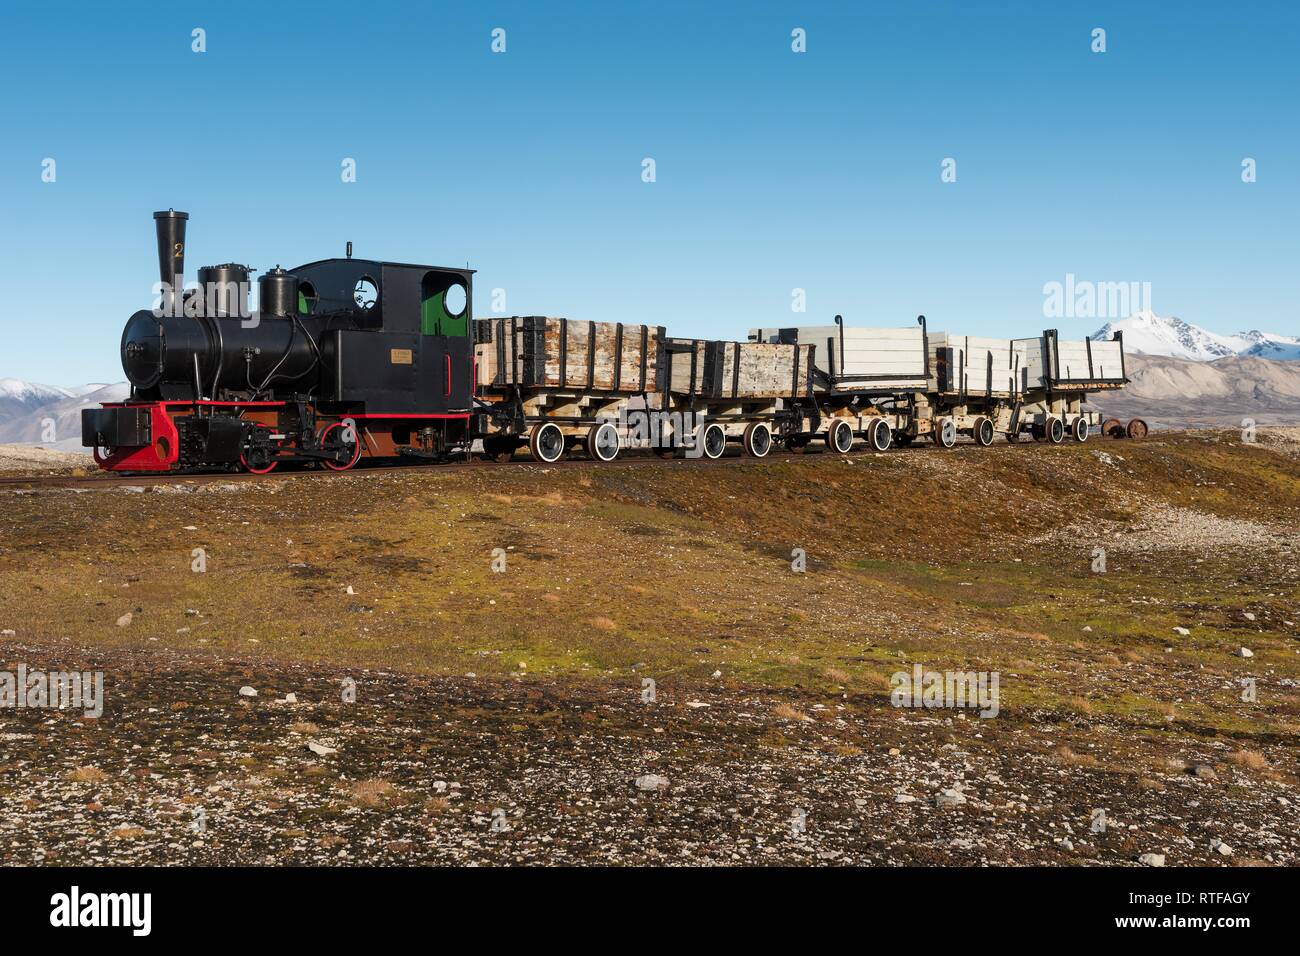 Le train de la mine historique en face de l'Kongsfjorden, Ny-Alesund, Spitsbergen, Svalbard, îles Svalbard et Jan Mayen (Norvège) Banque D'Images